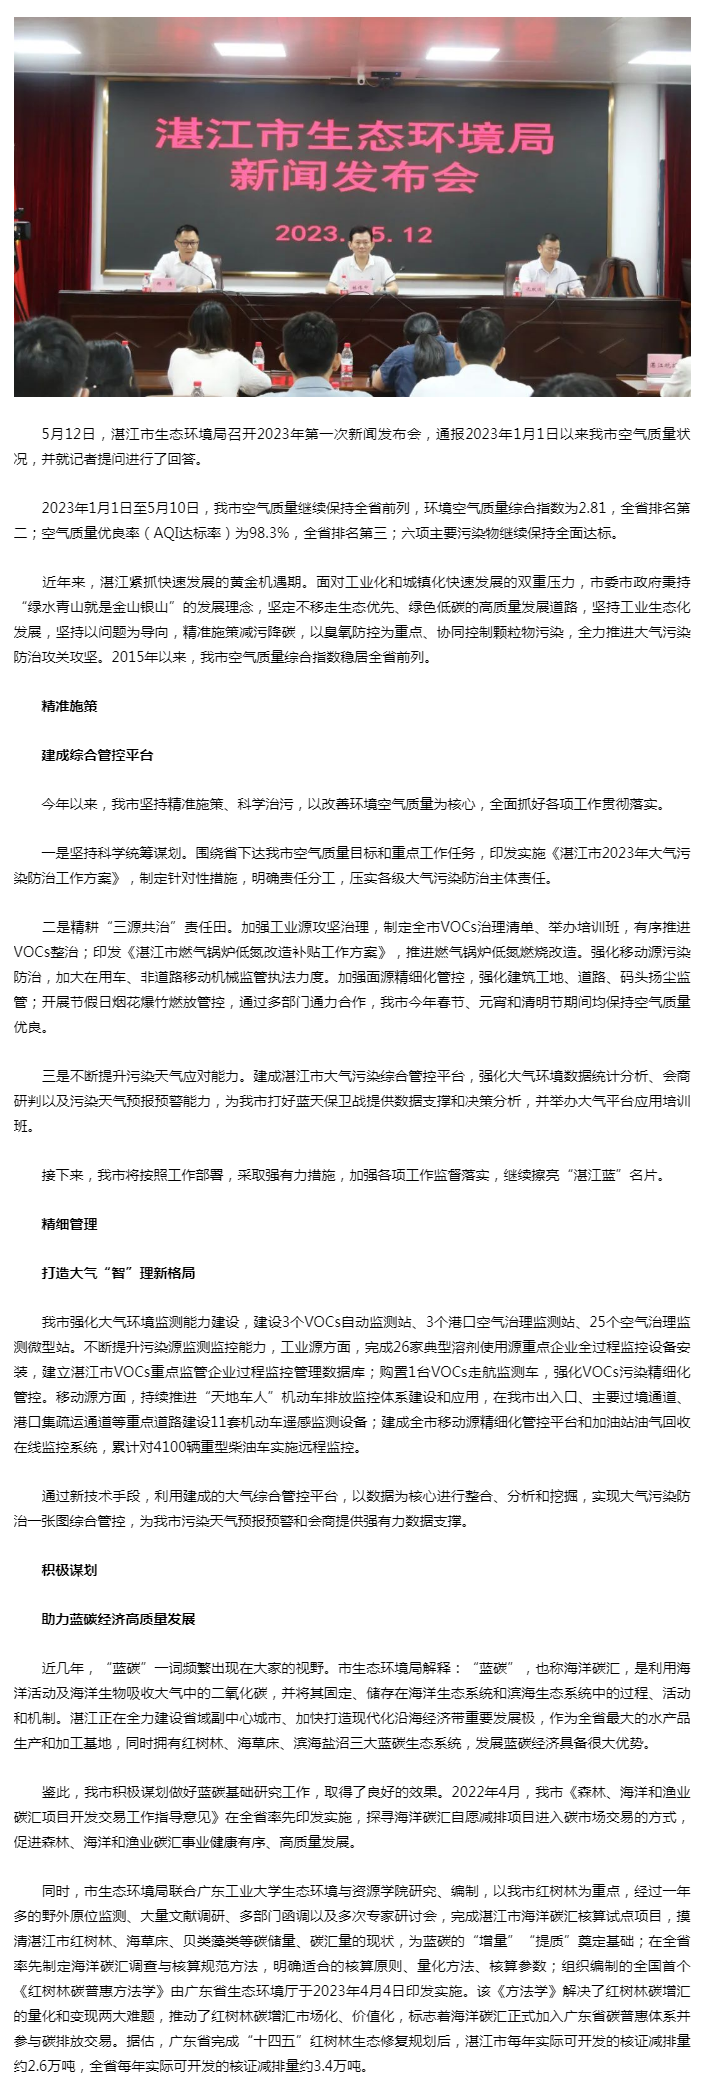 湛江市生态环境局召开2023年第一次新闻发布会.png